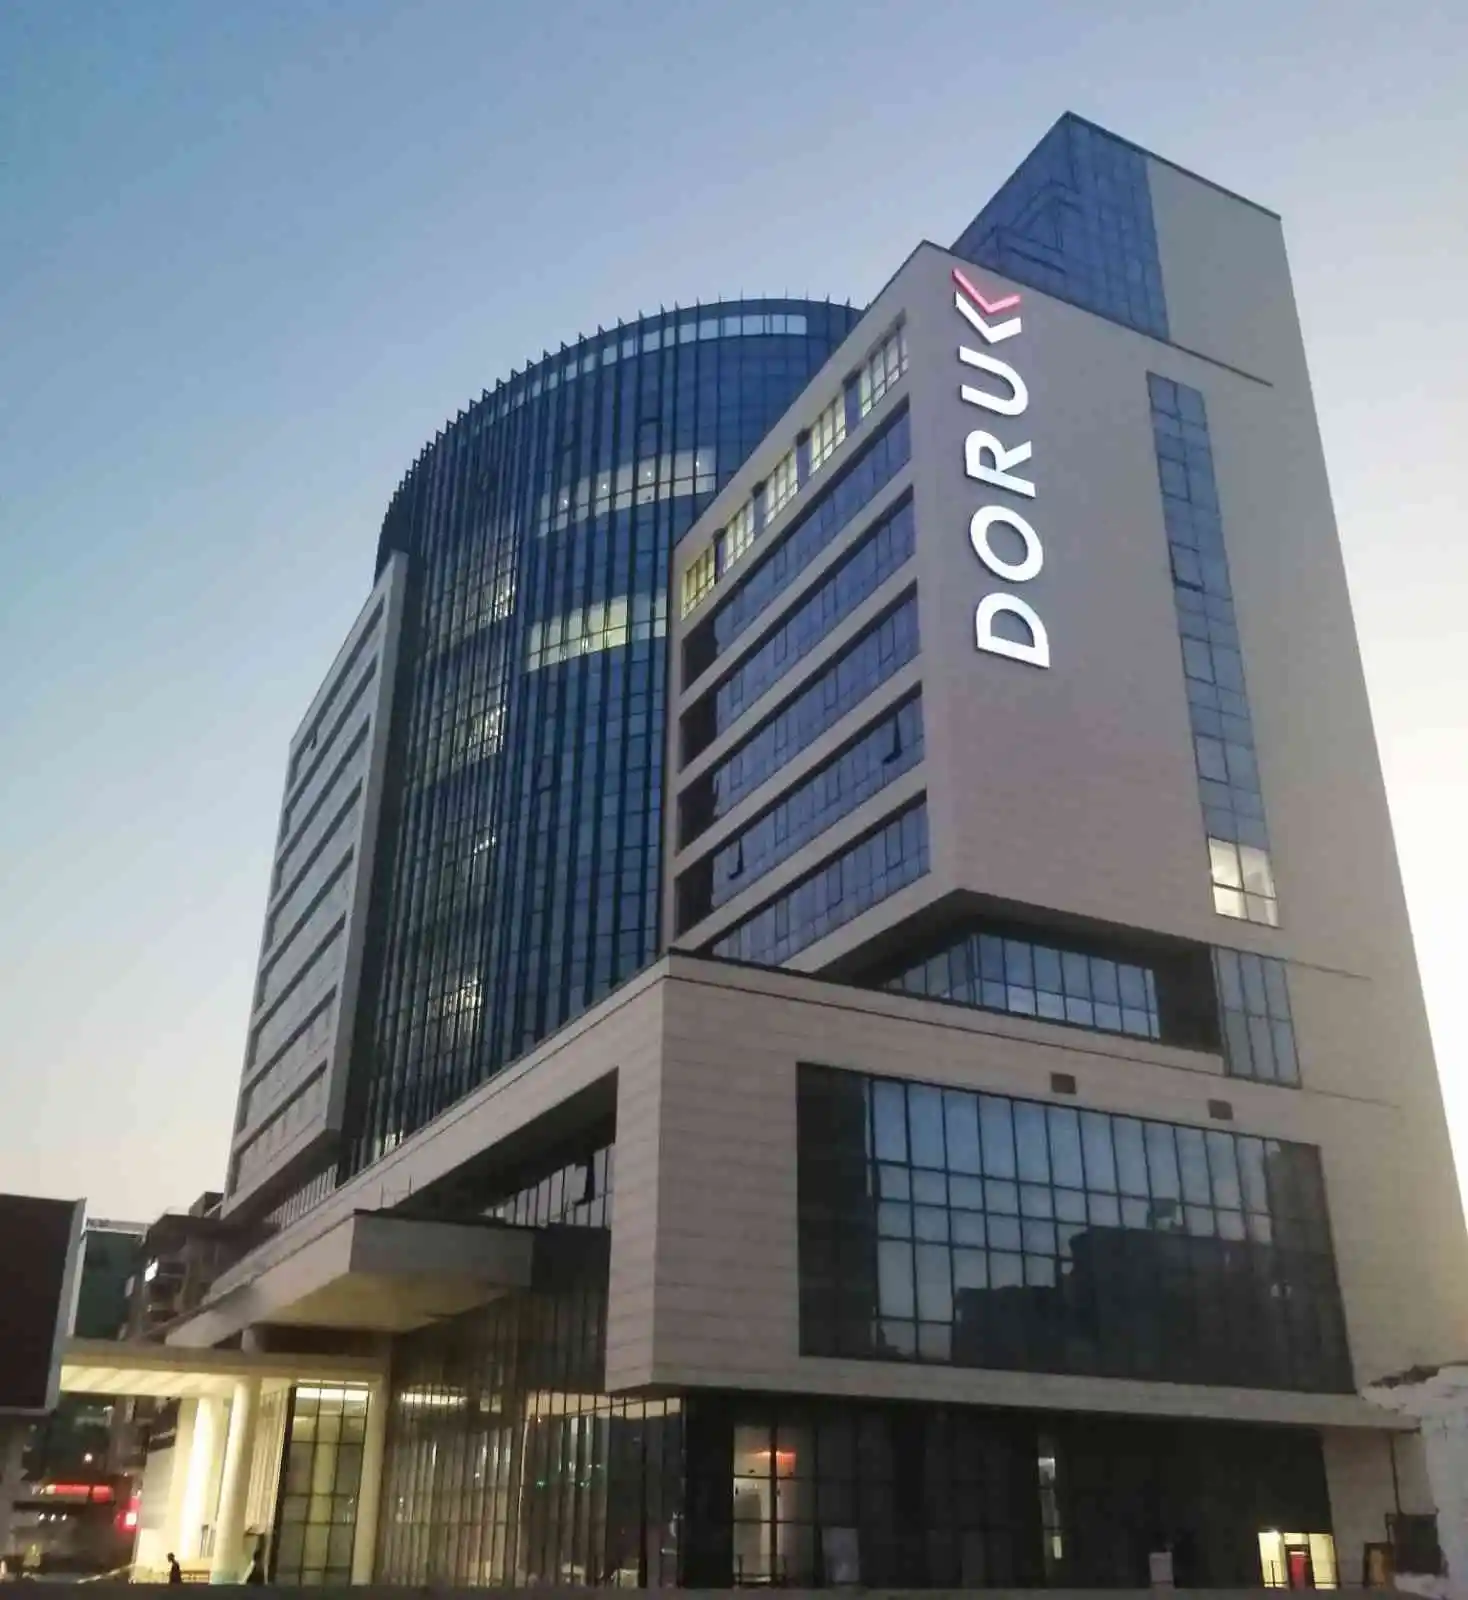 Otel ve AVM konforunda hastane açılması için gün sayıyor
